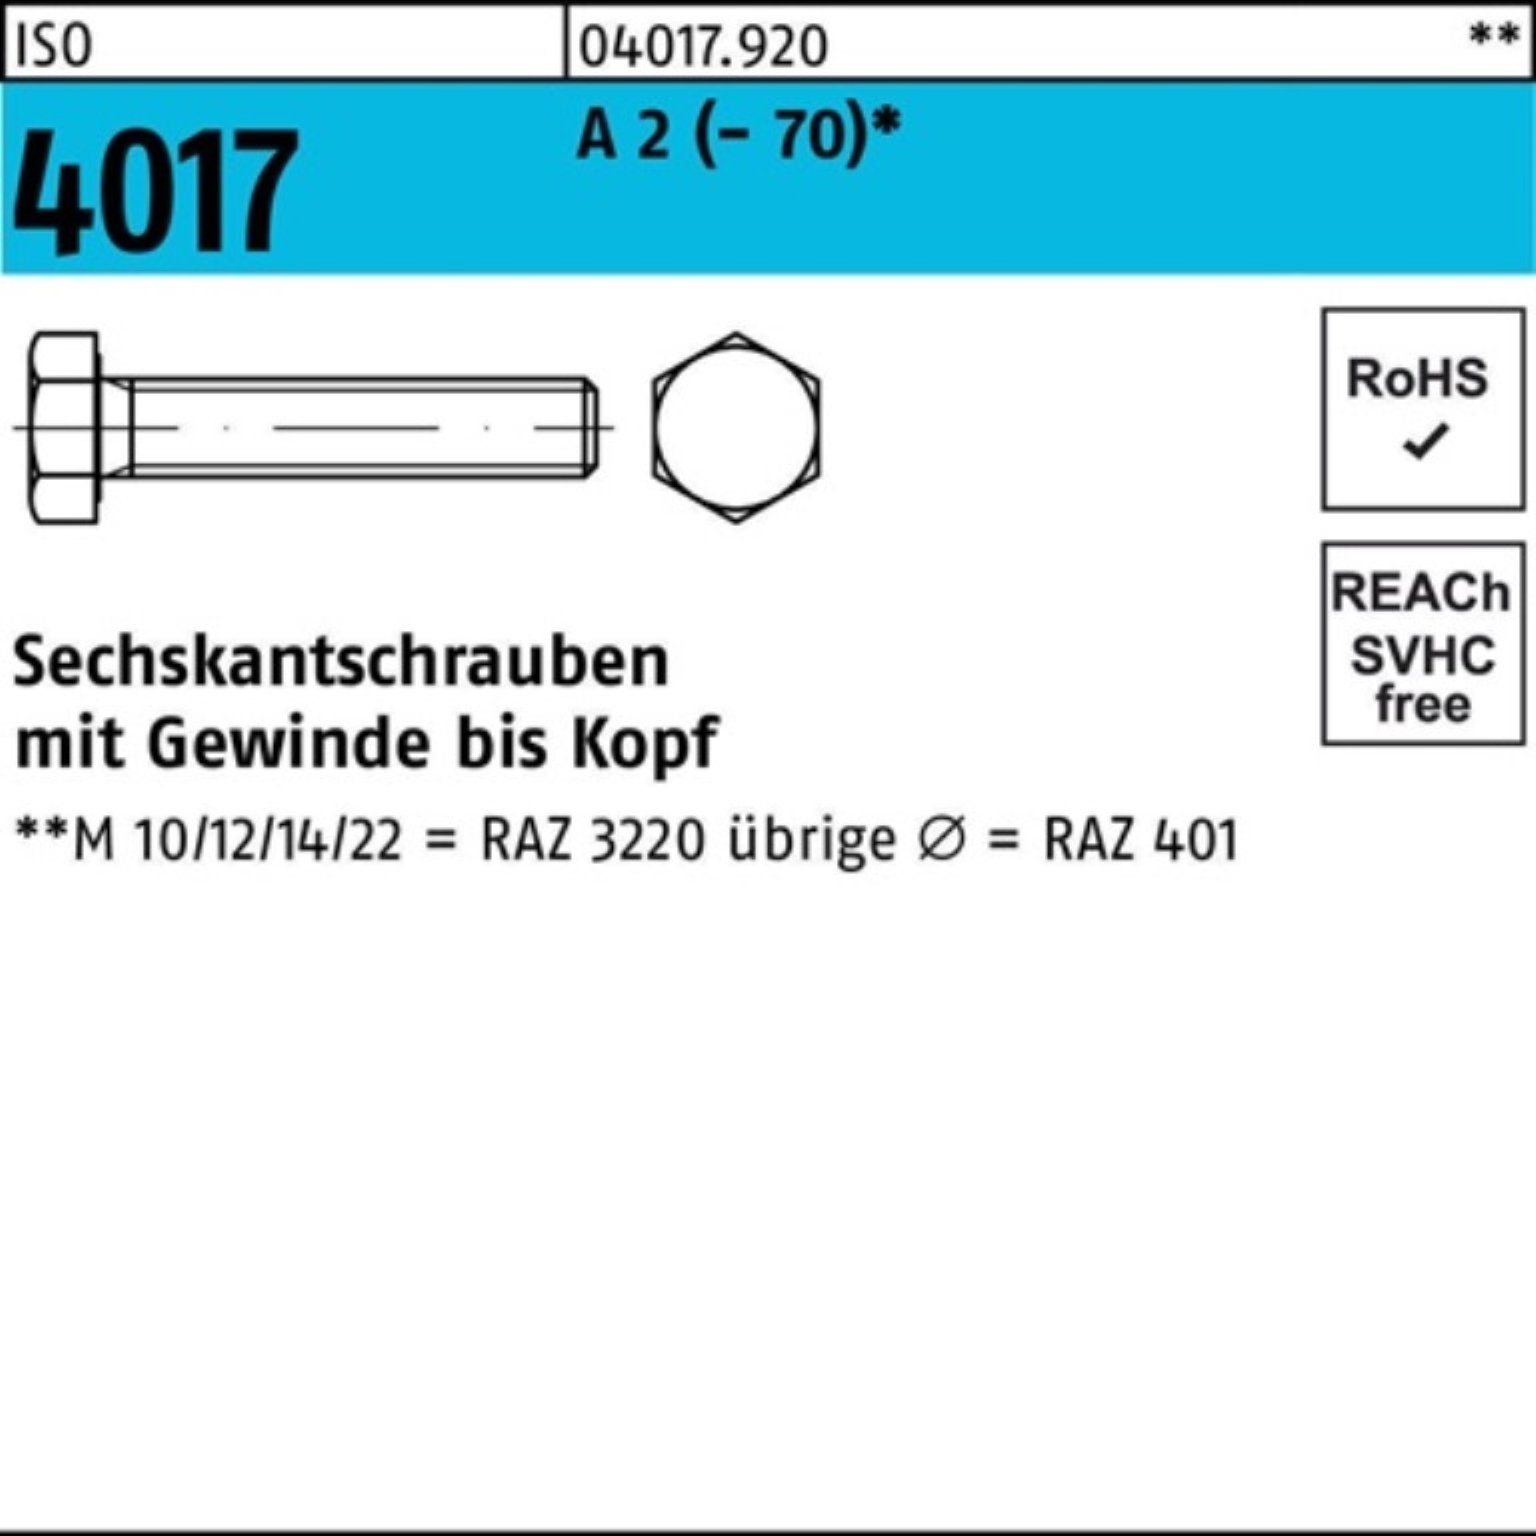 Bufab Sechskantschraube 100er Pack Sechskantschraube ISO 4017 VG M8x 40 A 2 (70) 100 Stück